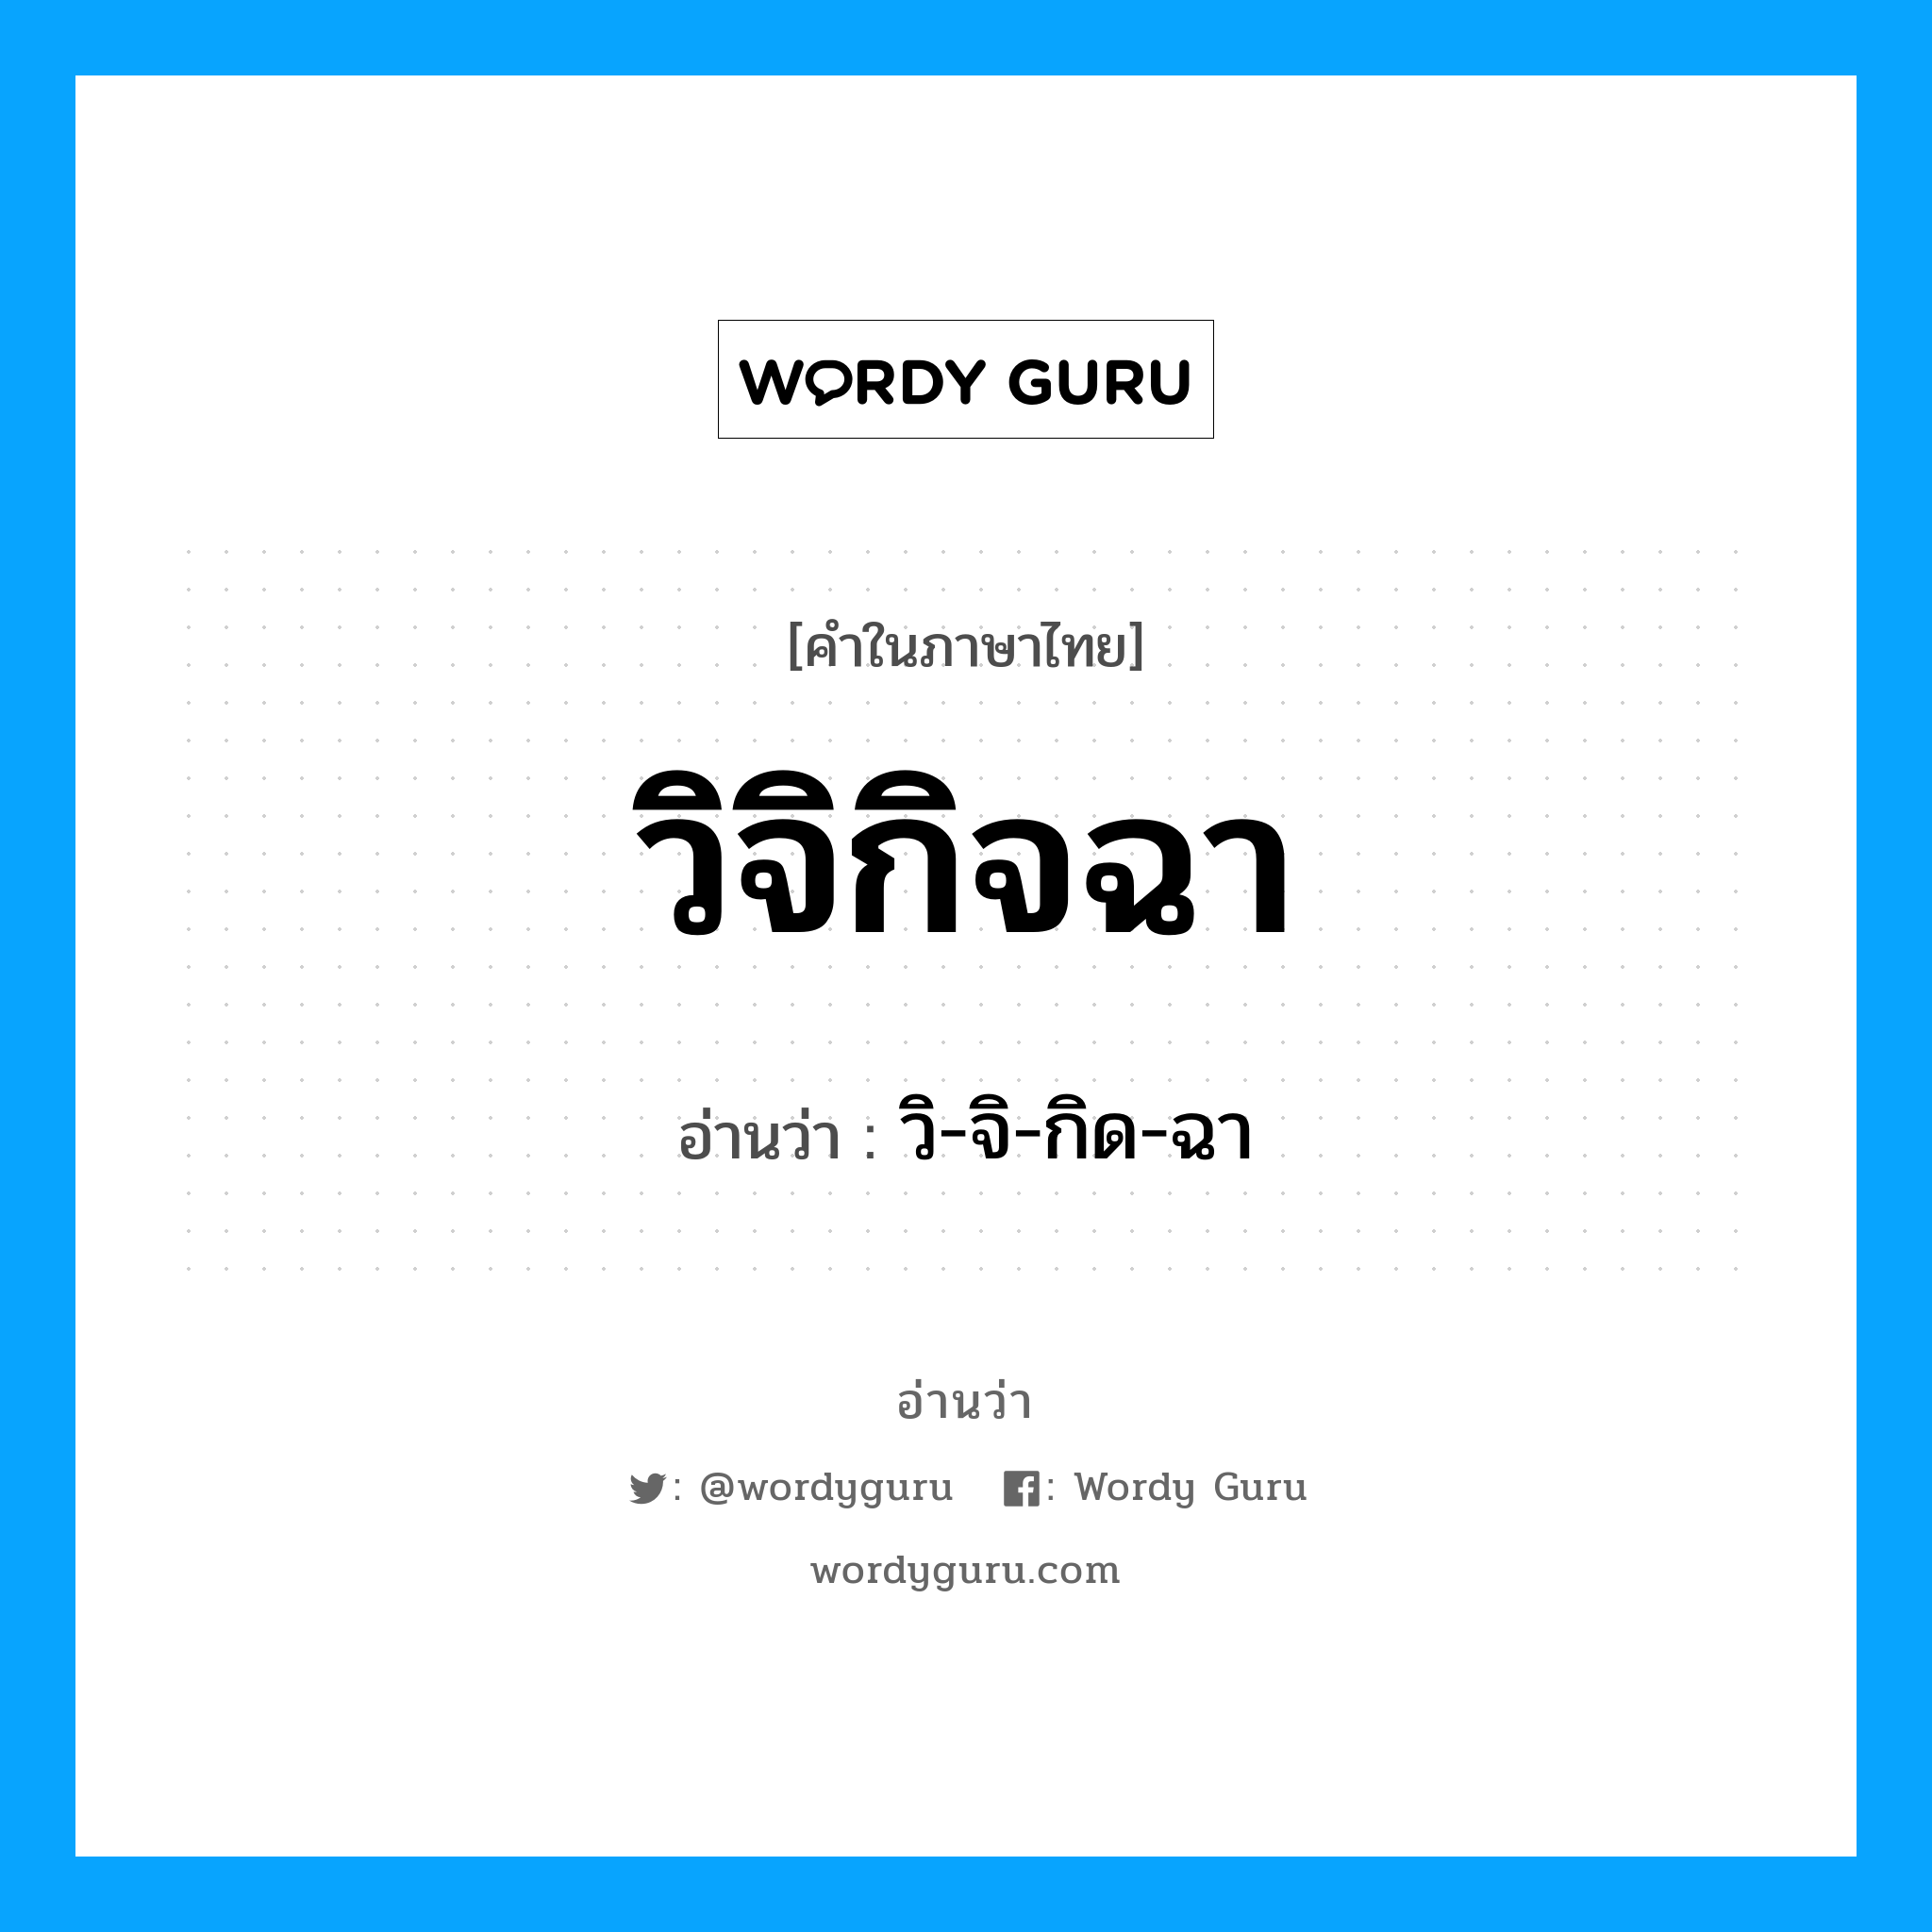 วิ-จิ-กิด-ฉา เป็นคำอ่านของคำไหน?, คำในภาษาไทย วิ-จิ-กิด-ฉา อ่านว่า วิจิกิจฉา